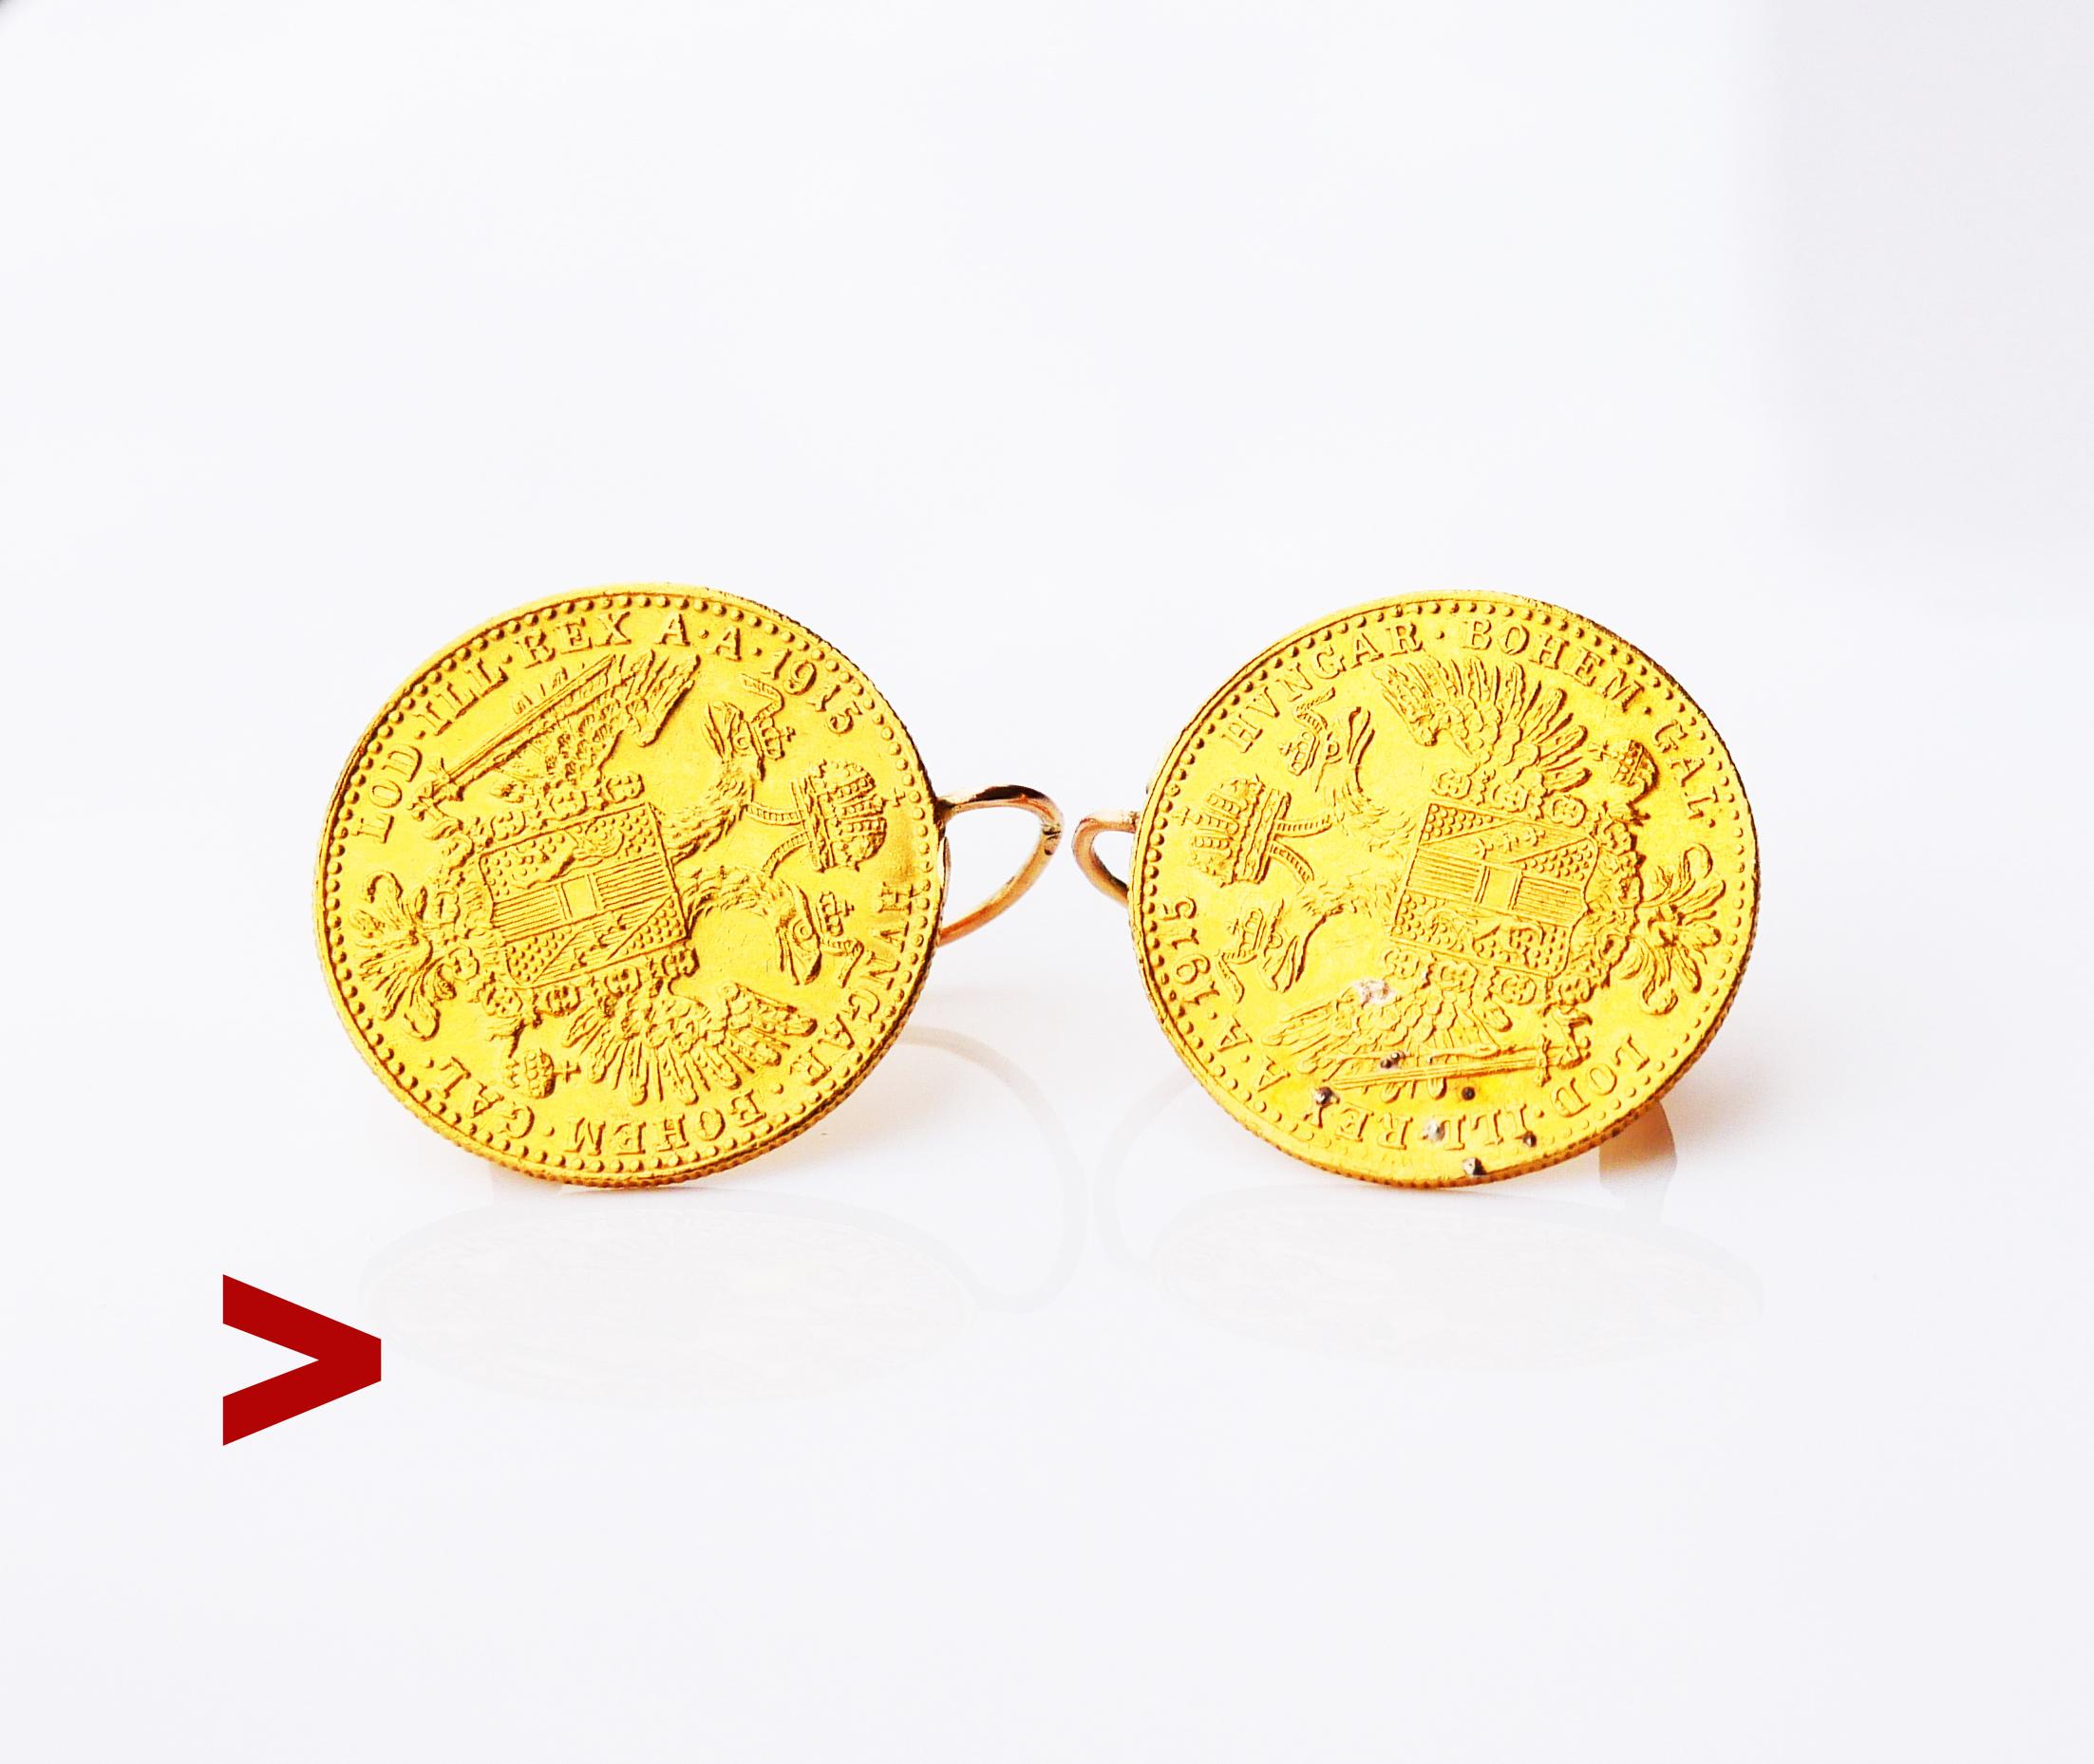 Antike österreichische Ohrringe Münzen mit einer österreichischen 23K Gold Dukaten Münze auf jedem Stück gelötet mit Falten Haken in massivem 14K Rose Cold.

Die Drähte sind mit den österreichischen Reichsstandardpunzen des frühen 20. Jahrhunderts